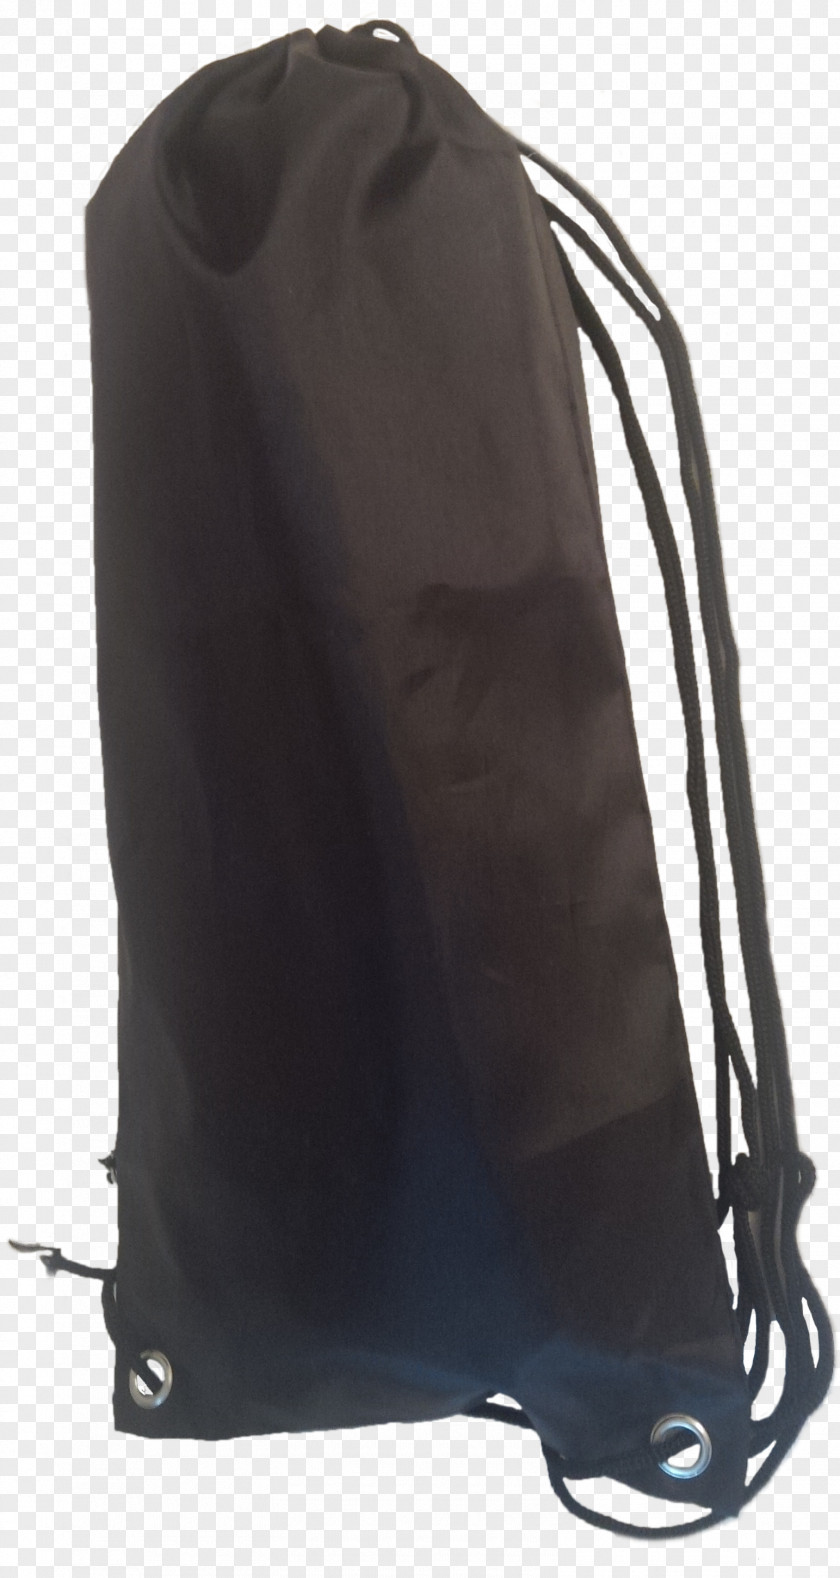 Carry A Tray Handbag Backpack Box Drawstring PNG